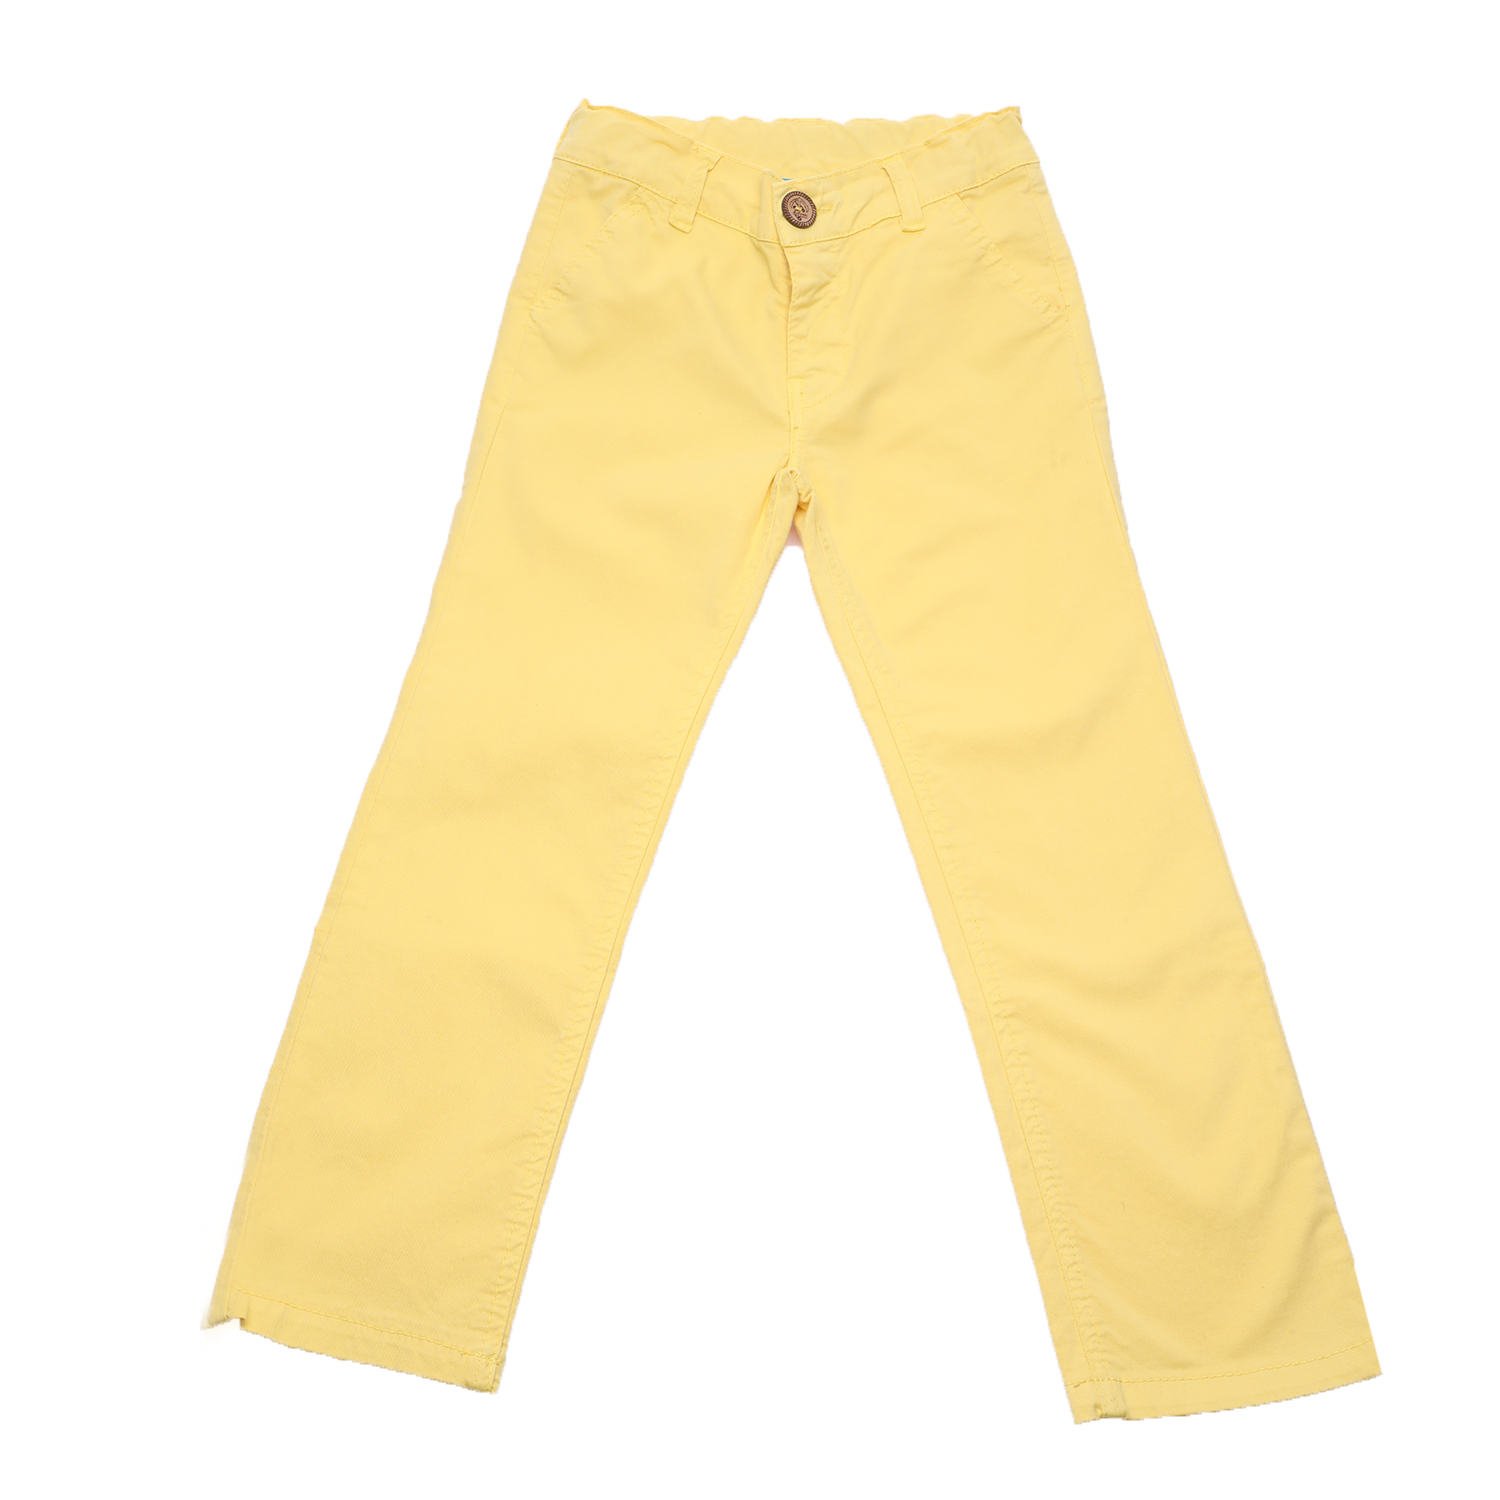 SAM 0-13 Παιδικό κλασικό παντελόνι SAM 0-13 κίτρινο